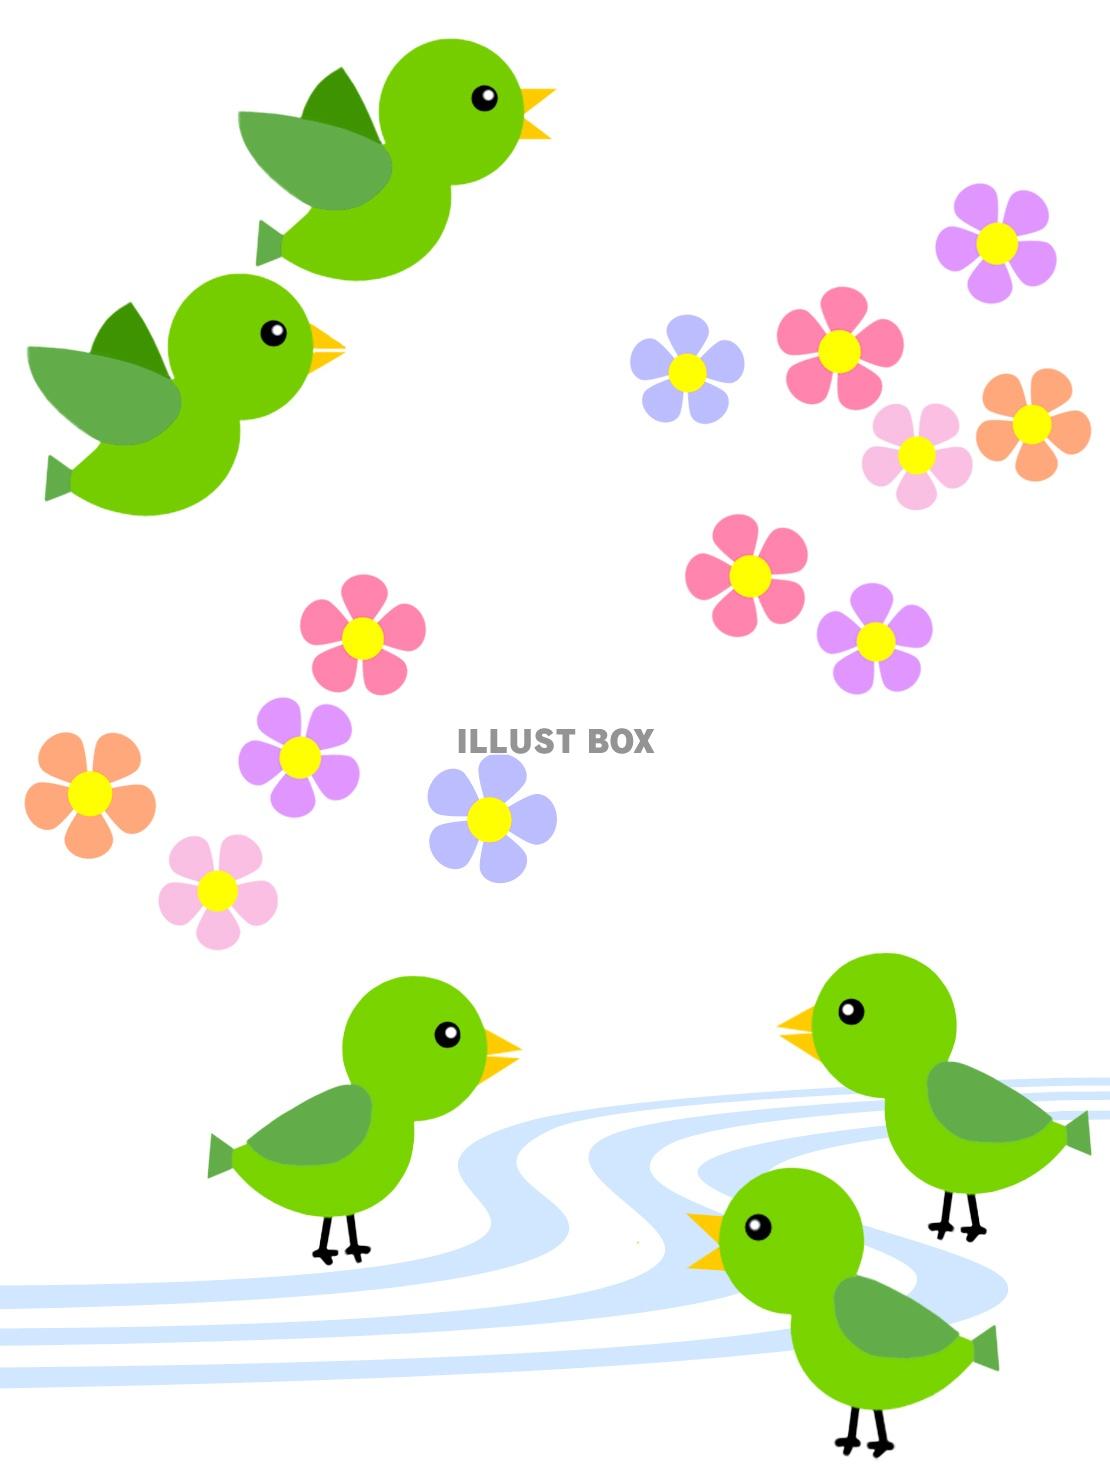 無料イラスト 小鳥と花模様の背景イラスト可愛い壁紙素材